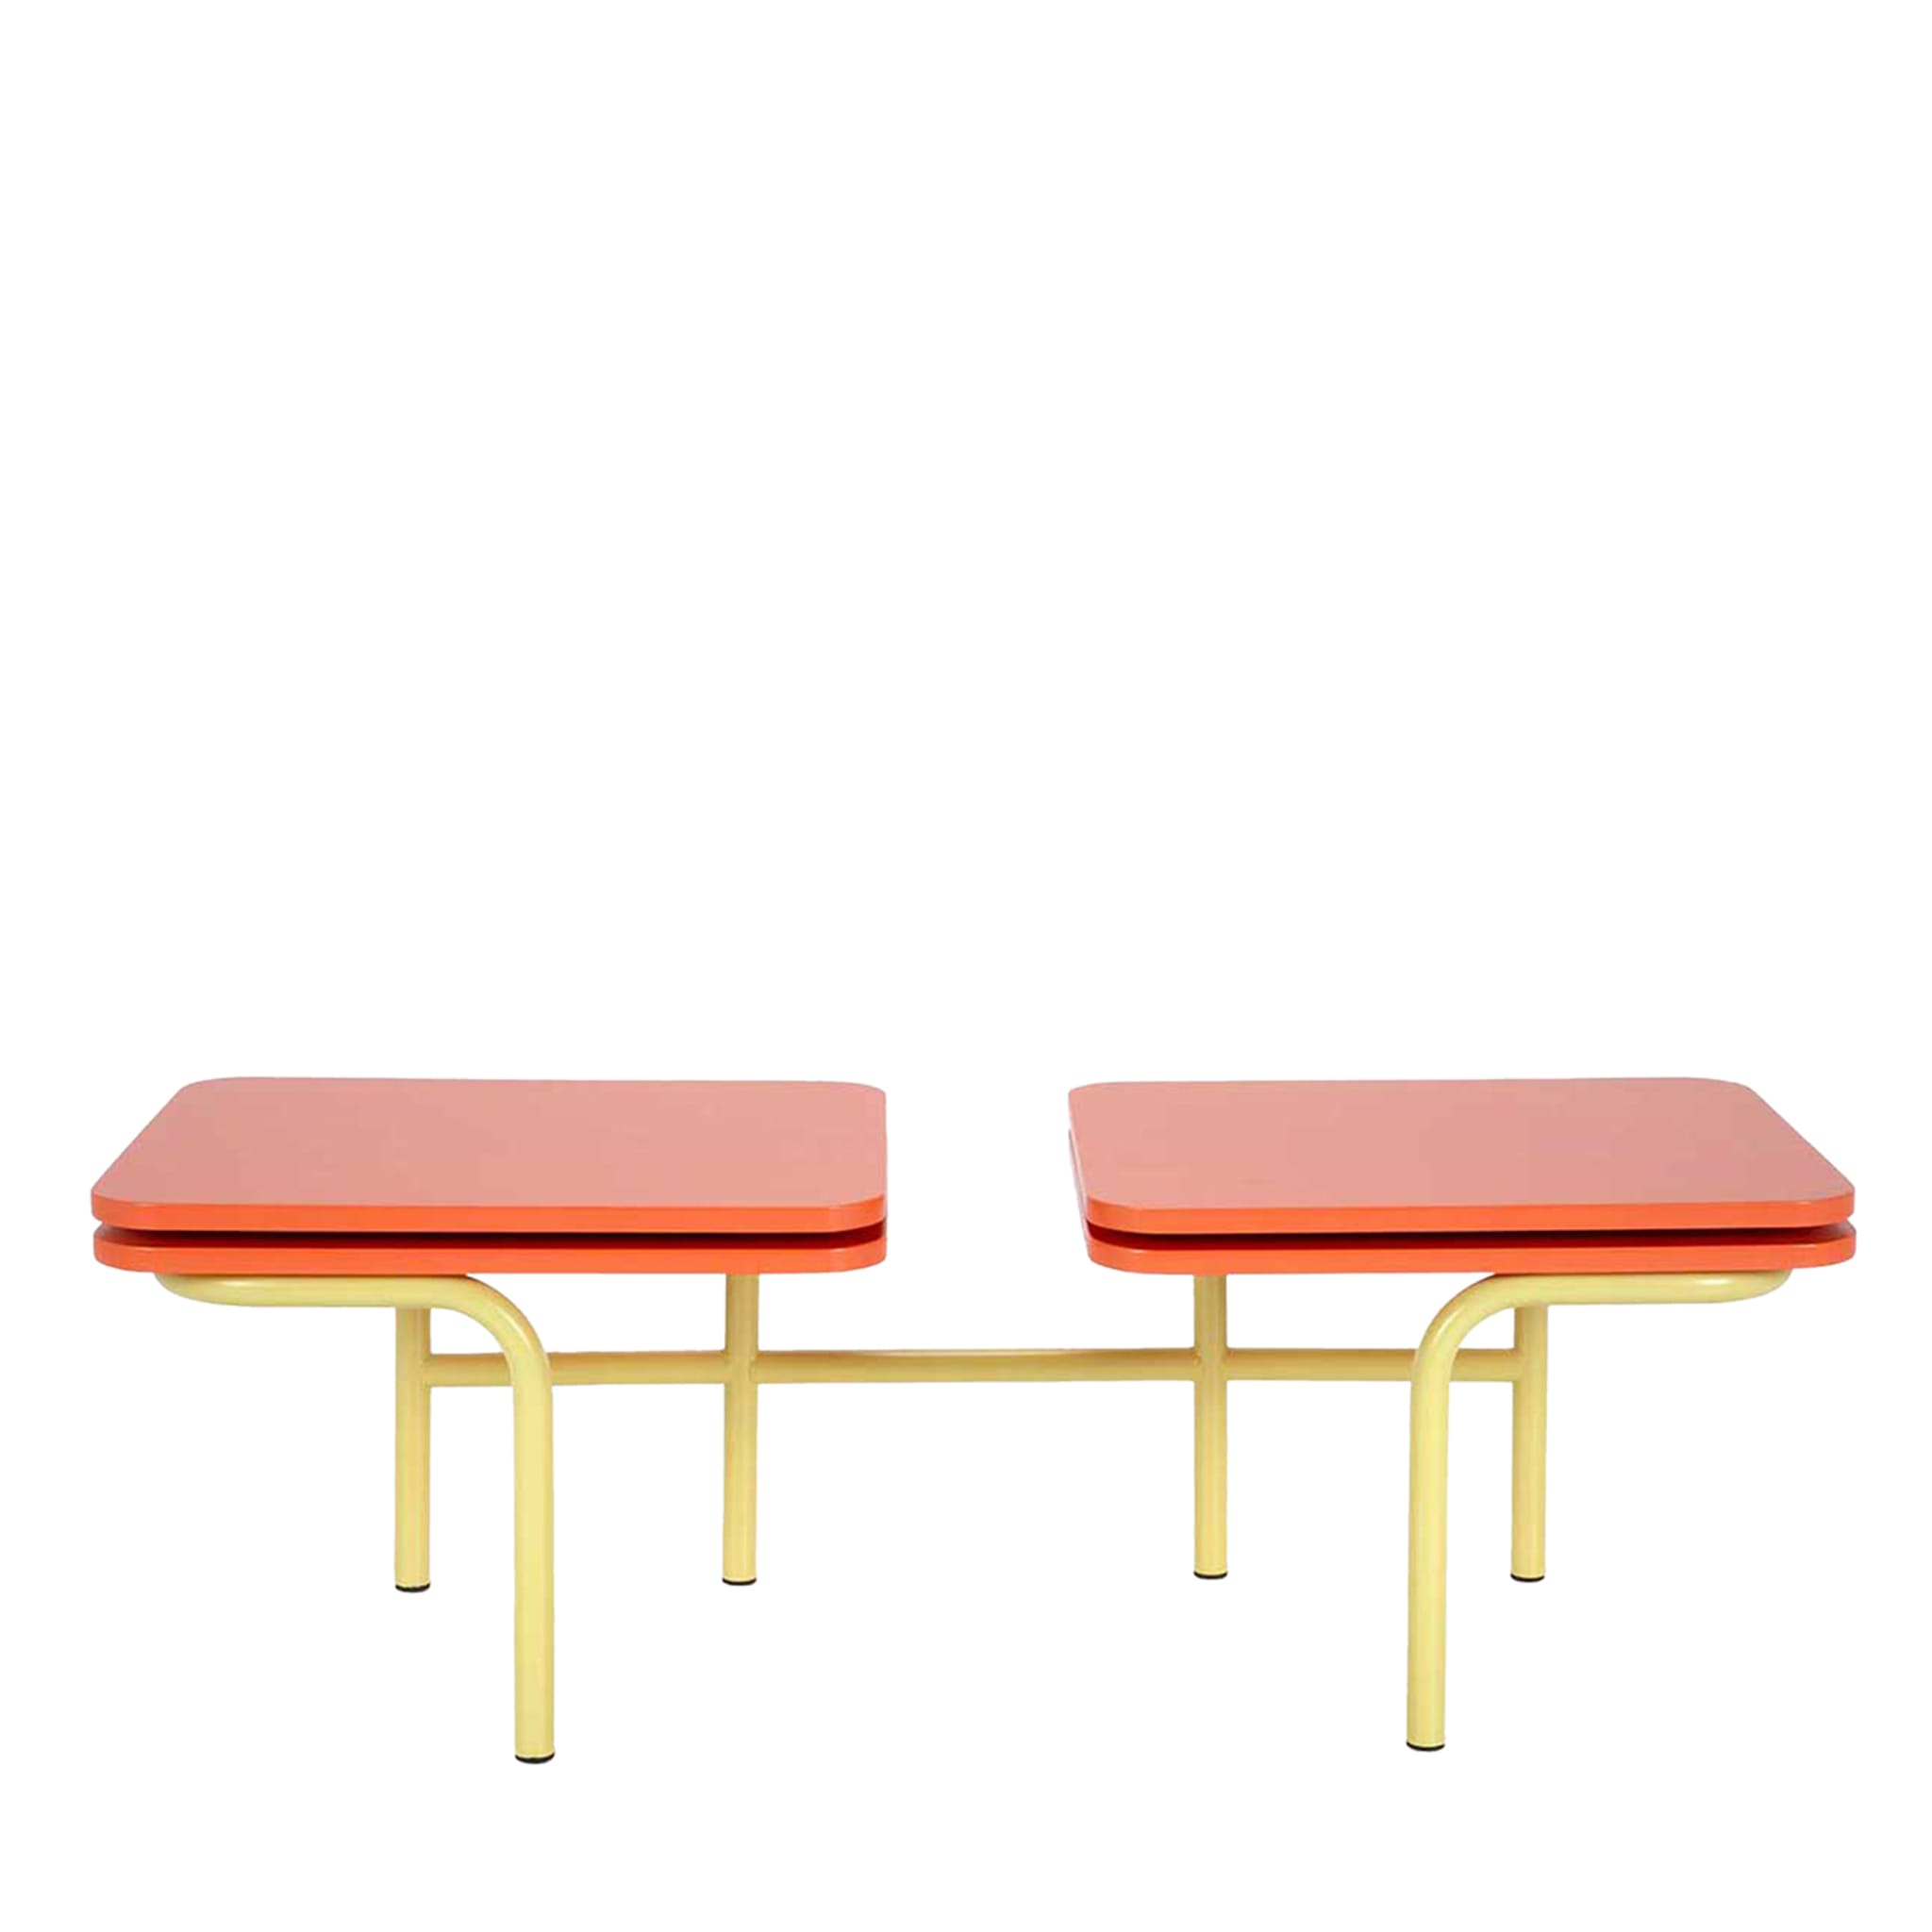 Tavolino Leo a 2 piani, giallo e arancione, di Daria Zinovatnaya - Vista principale